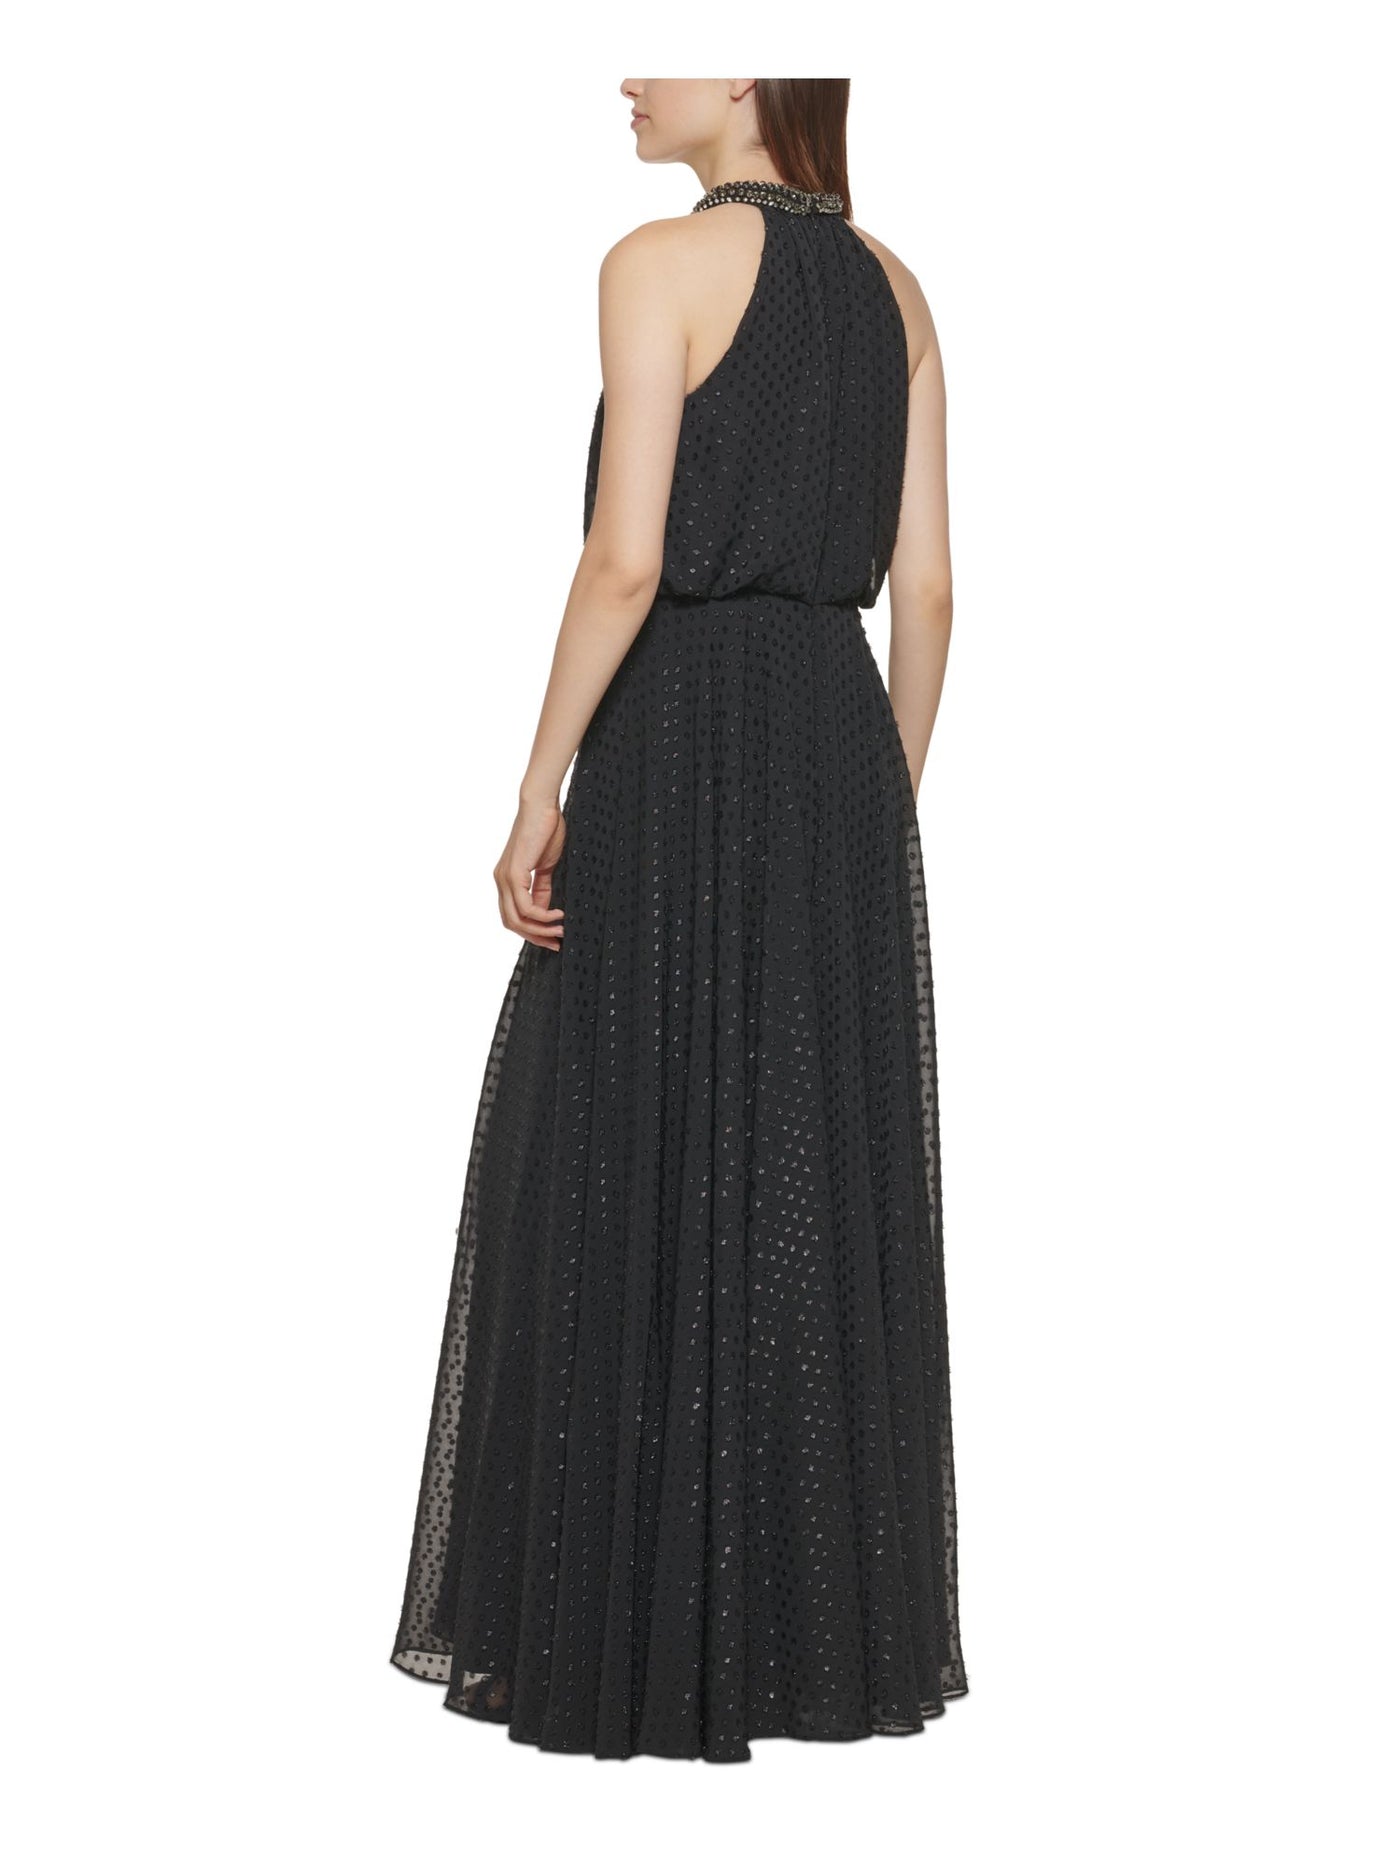 CALVIN KLEIN Womens Black Embellished Zippered Thigh High Slit Sleeveless Halter Full-Length Formal Gown Dress 10